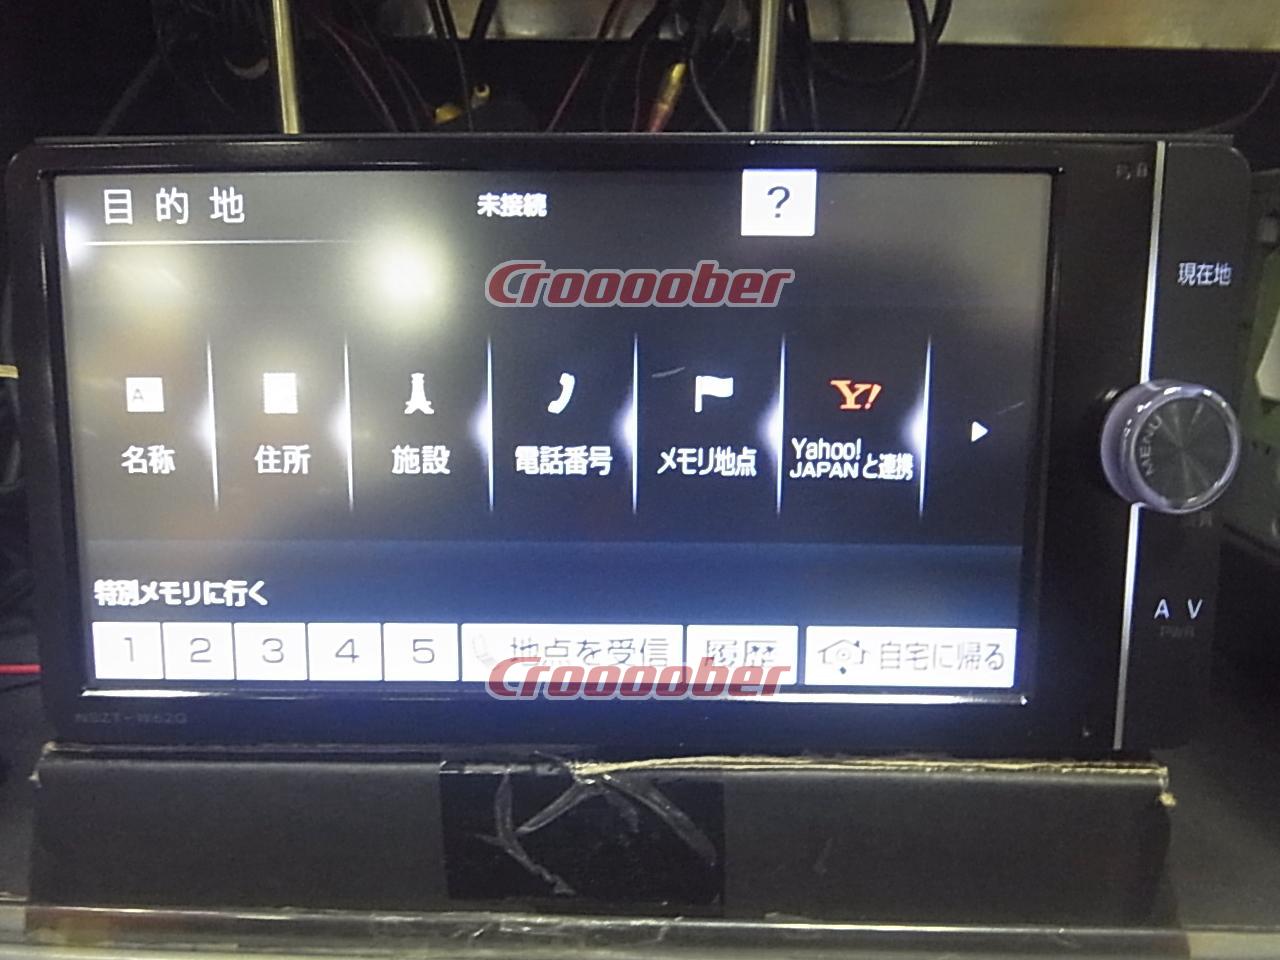 トヨタ純正 SDナビ NSZT-W62G   (M) カーナビ 自動車アクセサリー 自動車・オートバイ 半額セール